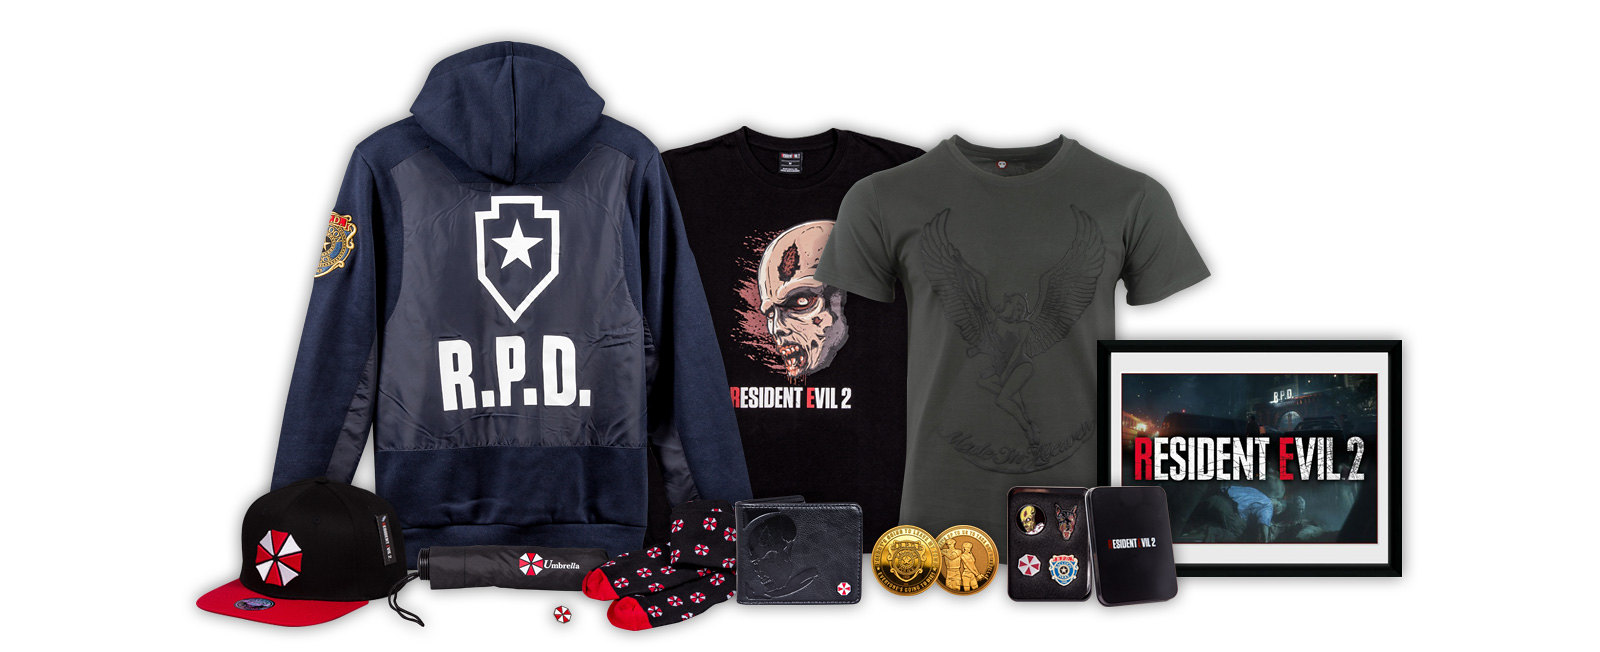 Resident Evil 2 merchandise